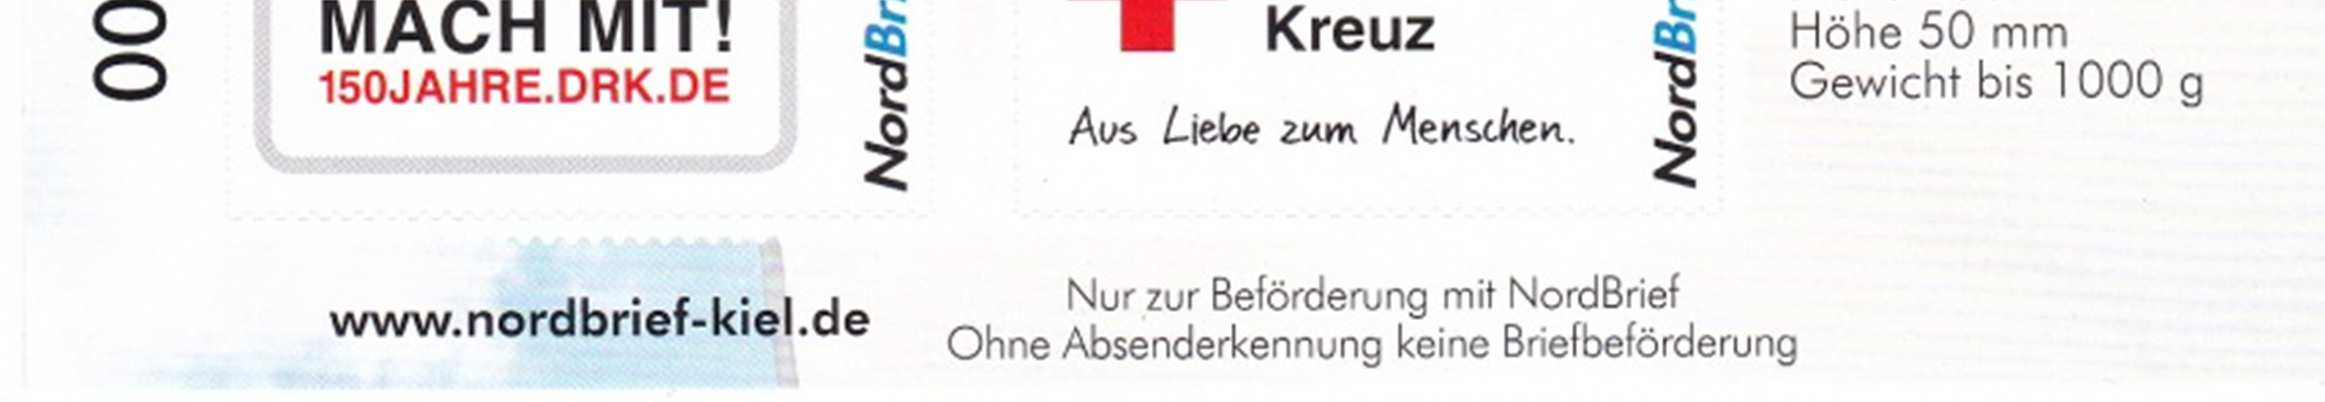 Privatpostausgaben mit Rot Kreuz der BRD Seite 10 2013